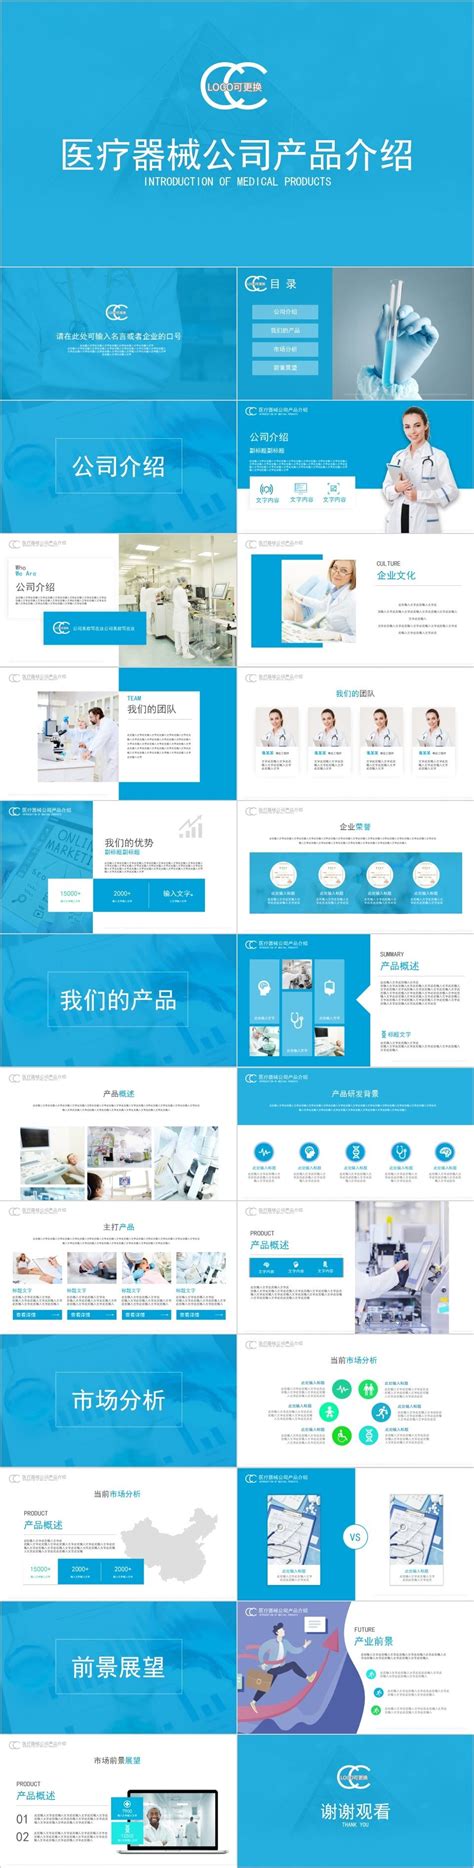 【医疗器械】医疗器械手术设备设计 - 南京云艺达工业设计公司 外观设计|产品设计|医疗设计|创新设计